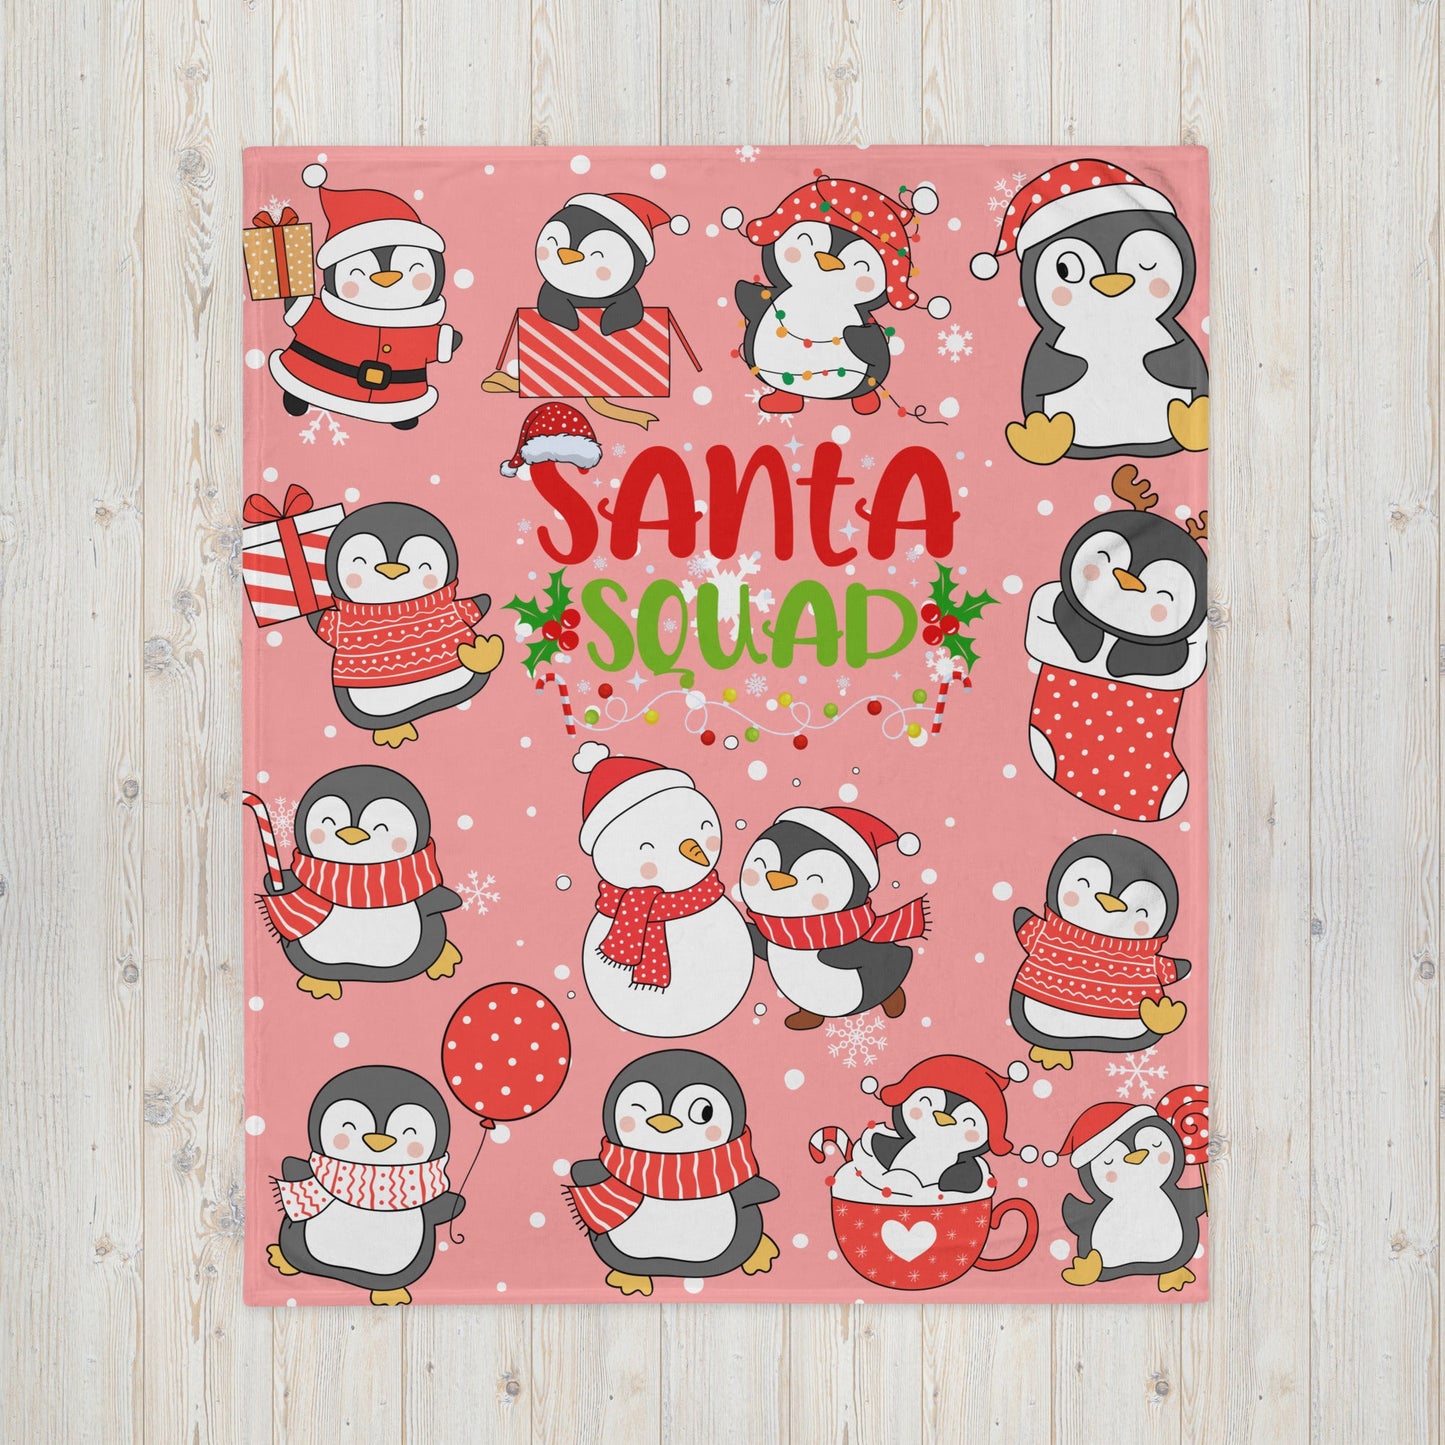 Santa Penguin Squad Throw Blanket-THROW BLANKET-50″×60″-Santa Penguin Squad2-mysticalcherry